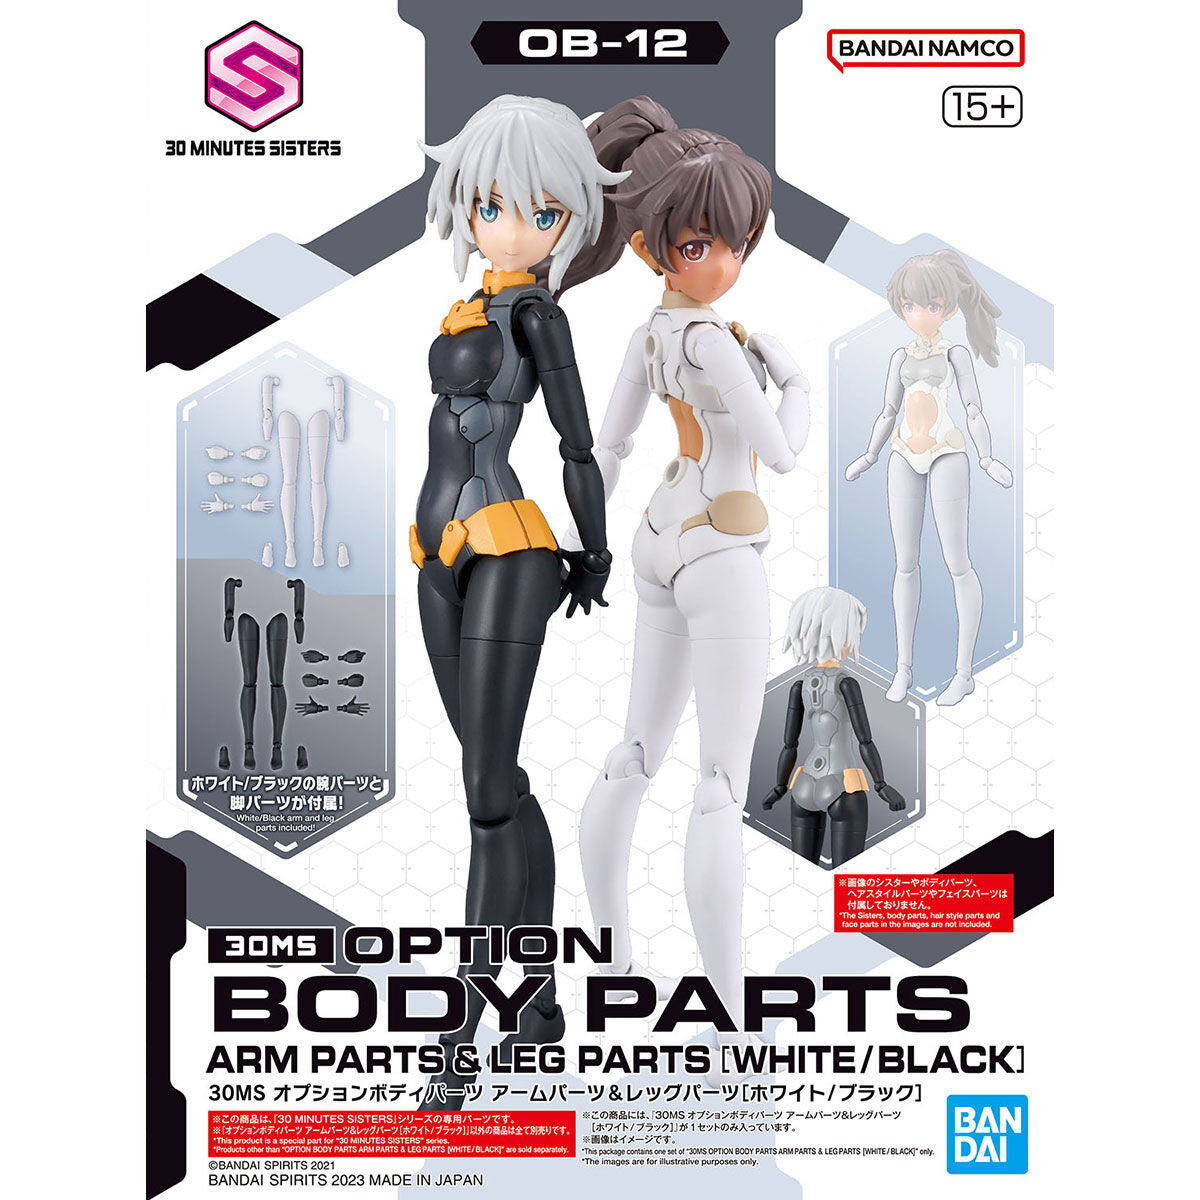 30MS Optional Body Parts Arm Parts & Leg Parts [White/Black]